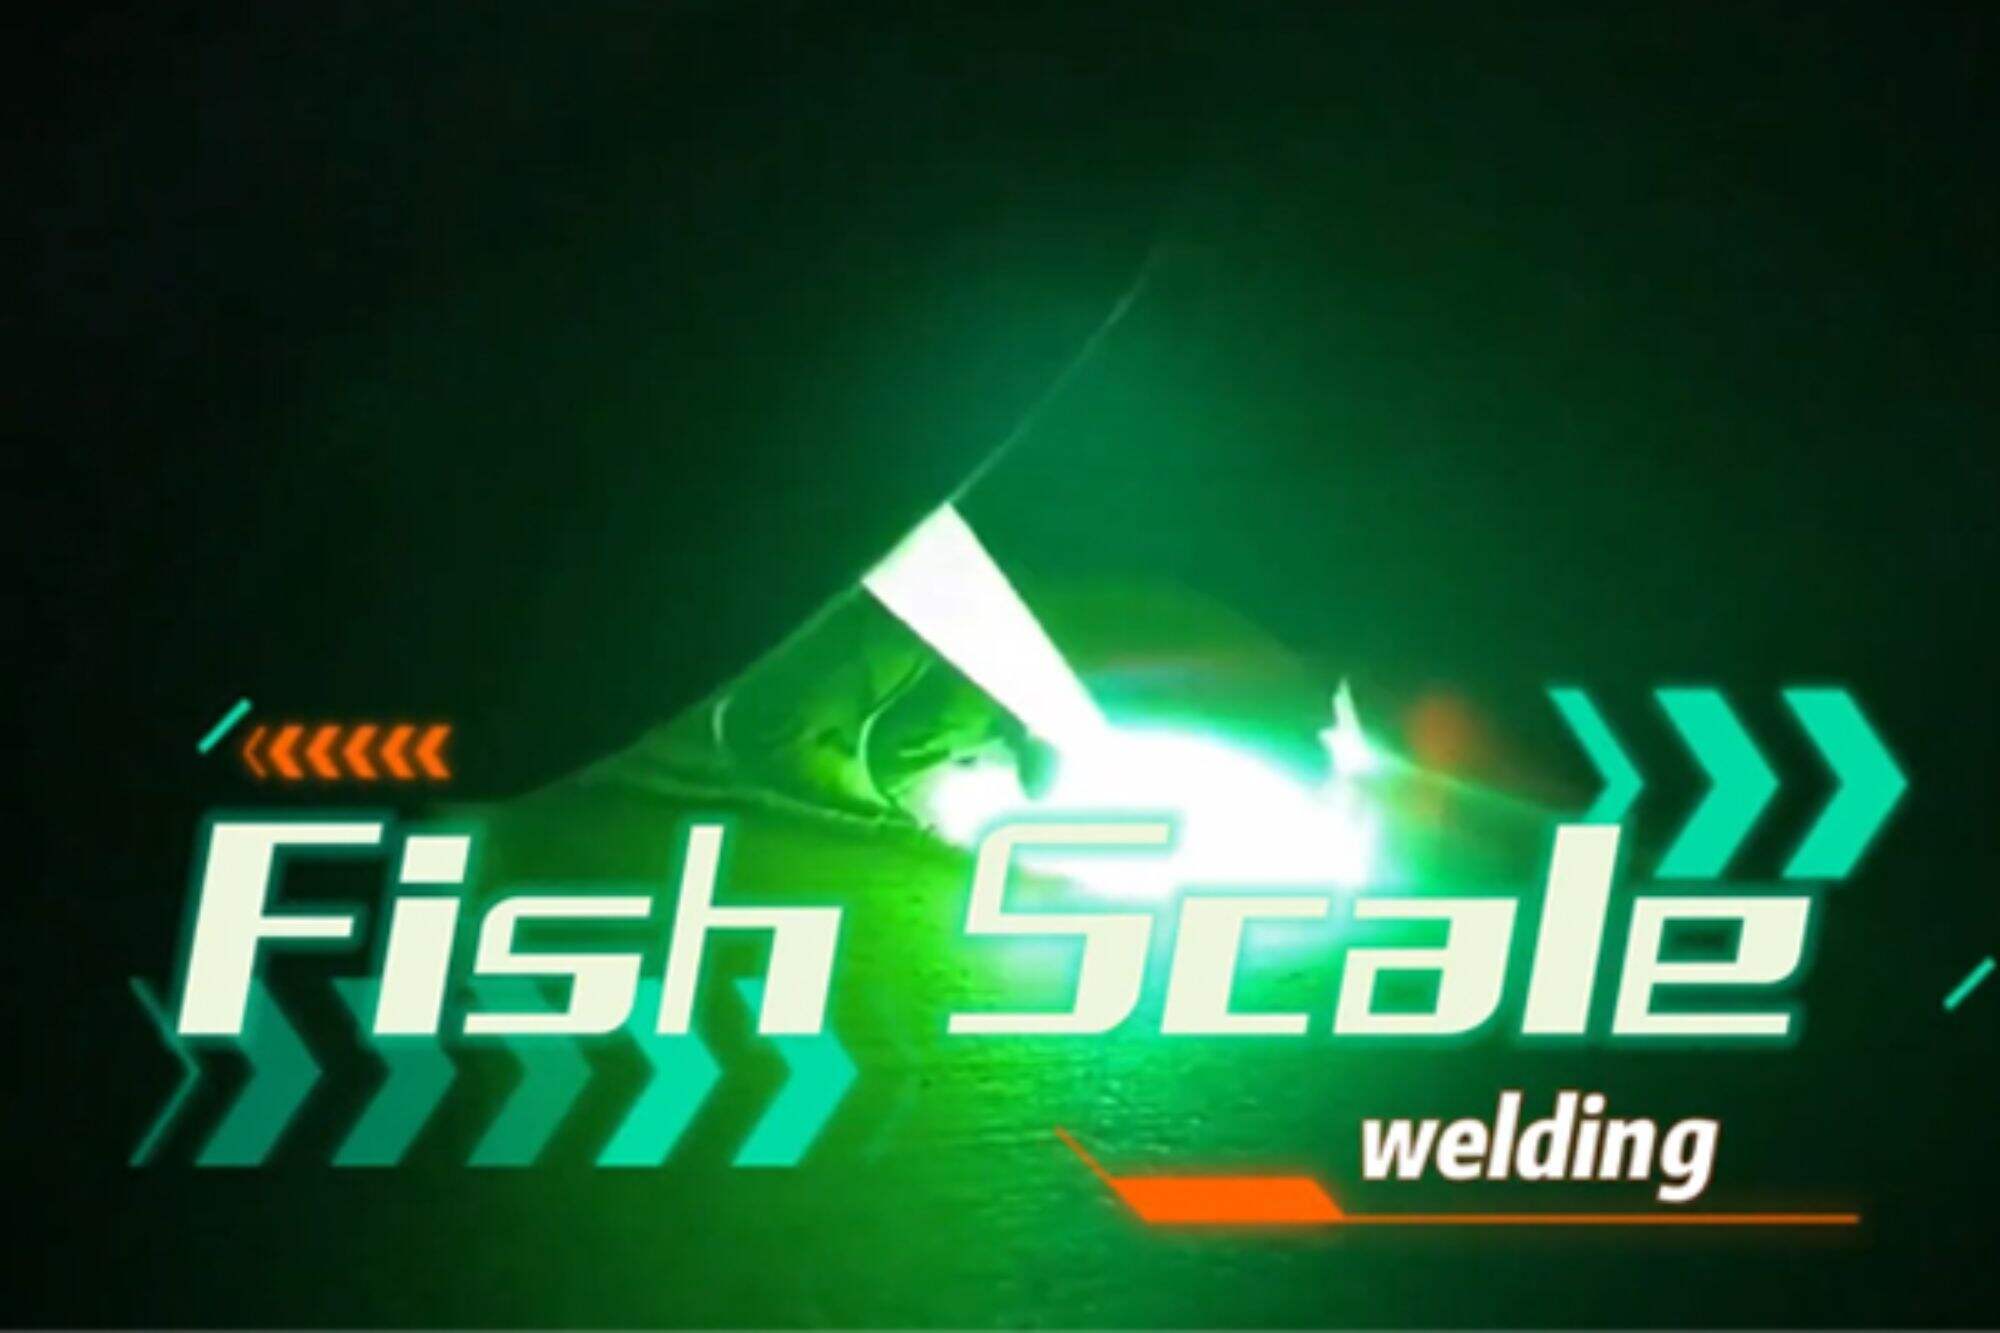 Ręczna spawarka laserowa wykazuje efekt spawania łuskami ryb i jest łatwa w obsłudze